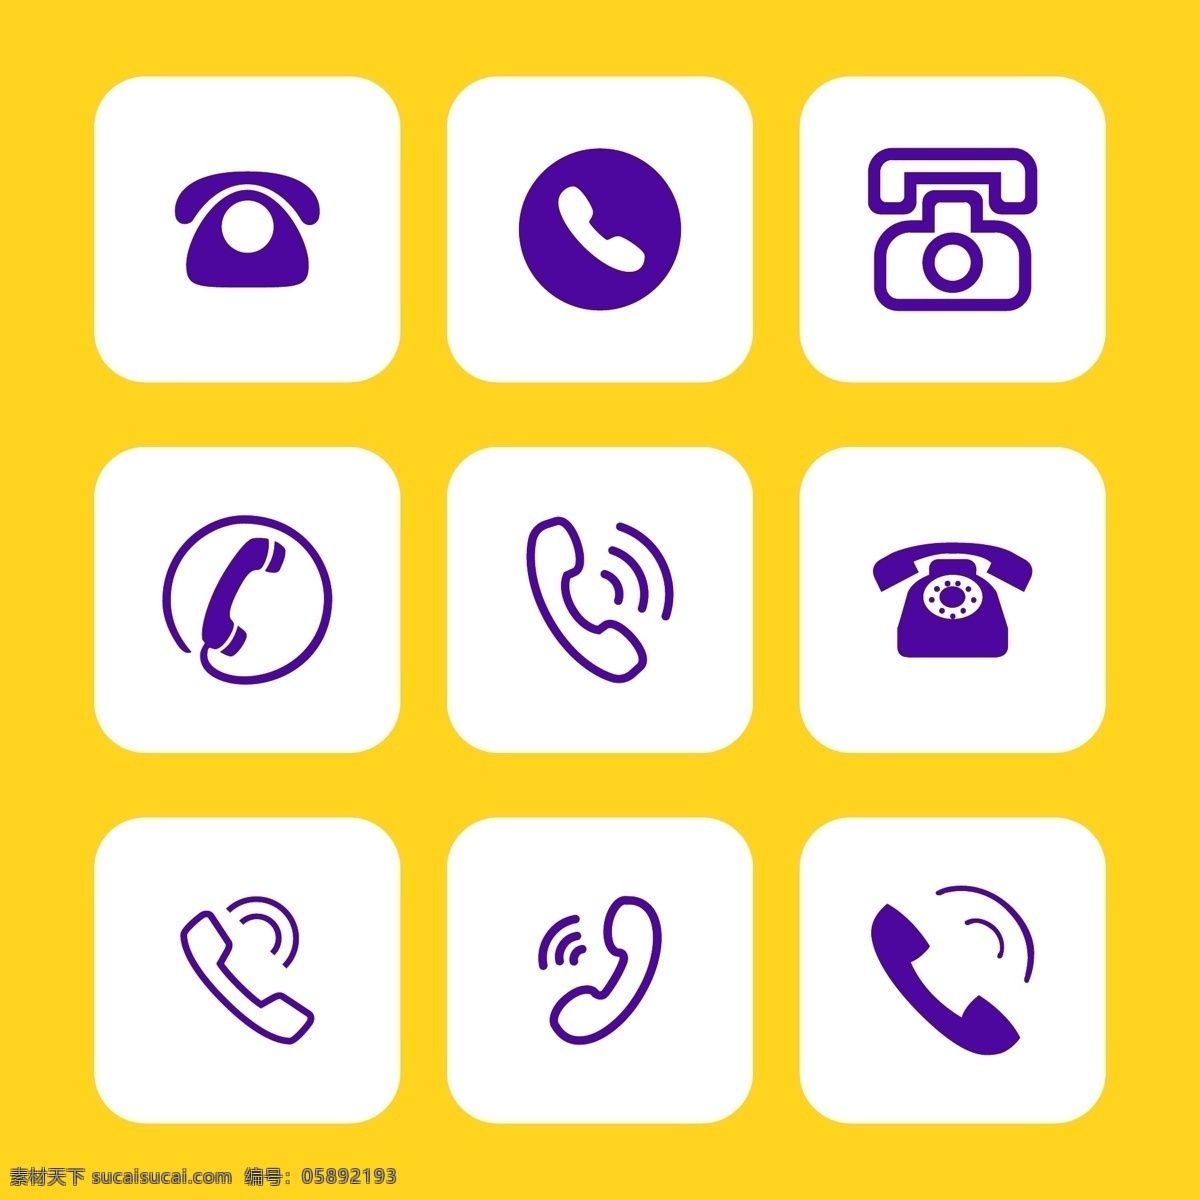 各种电话图标 电话 图标 电话矢量图标 电话标志 电话符号 电话机 logo设计